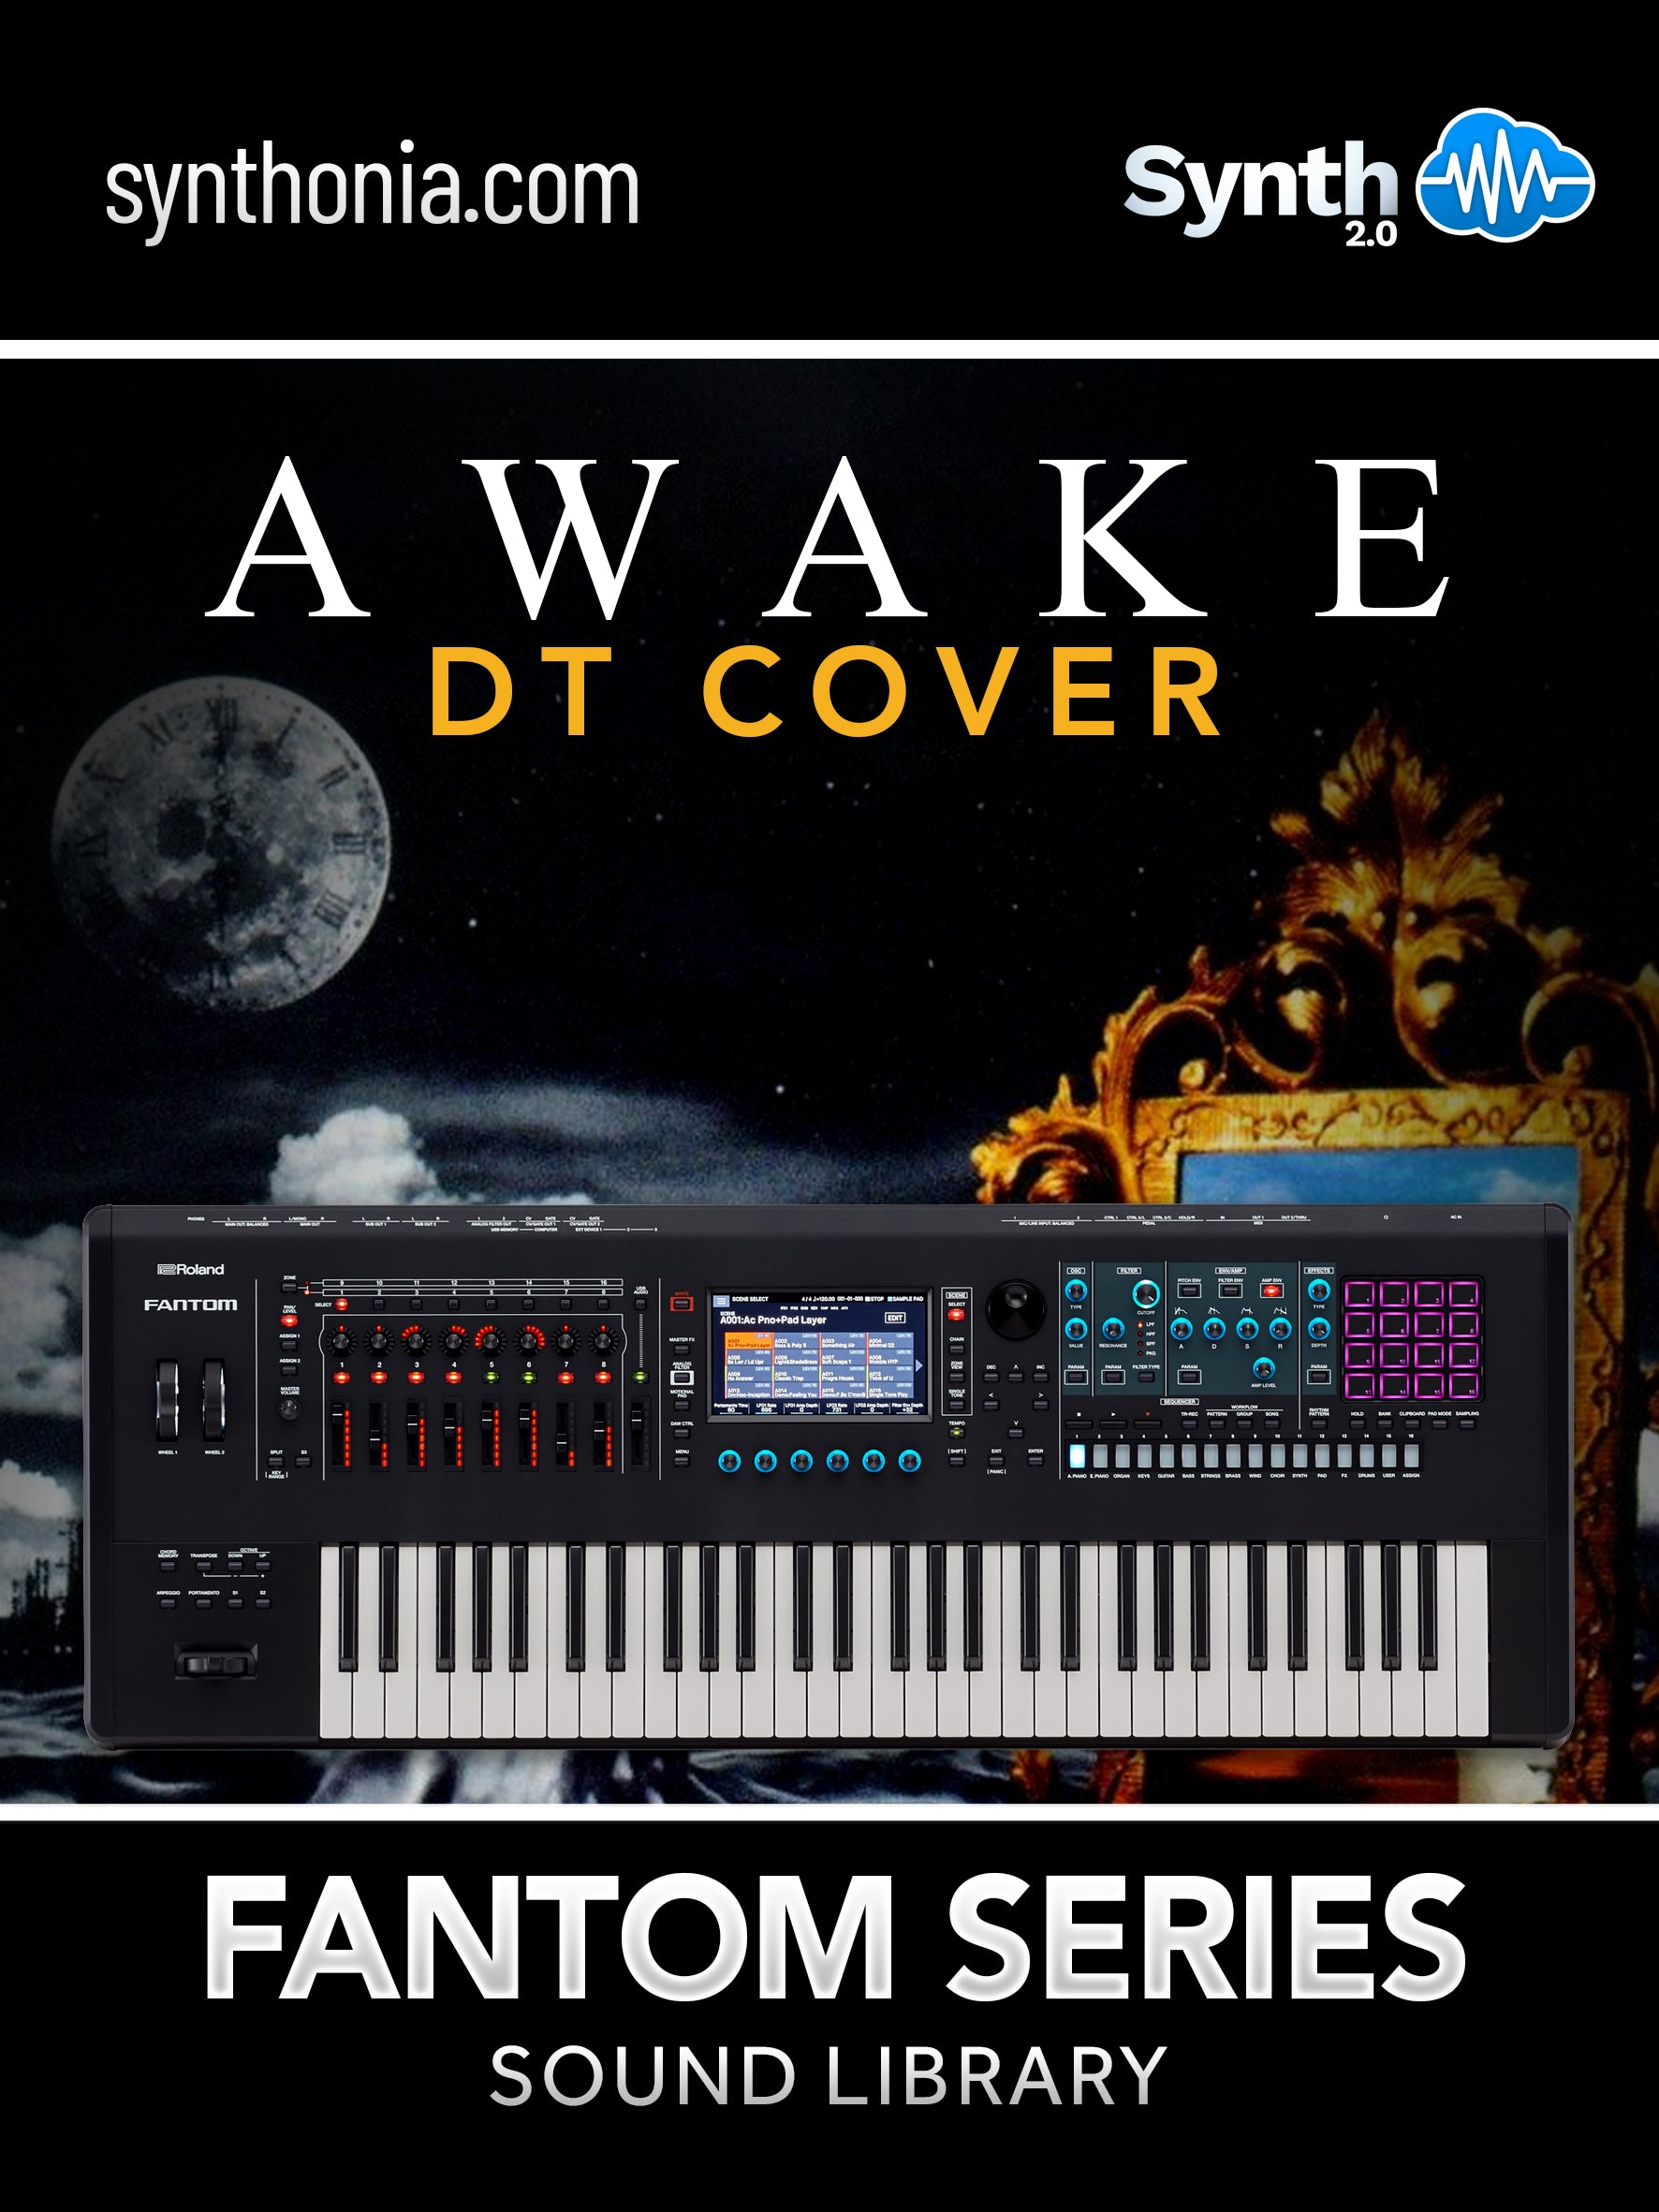 LDX236 - Awake DT Cover - Fantom